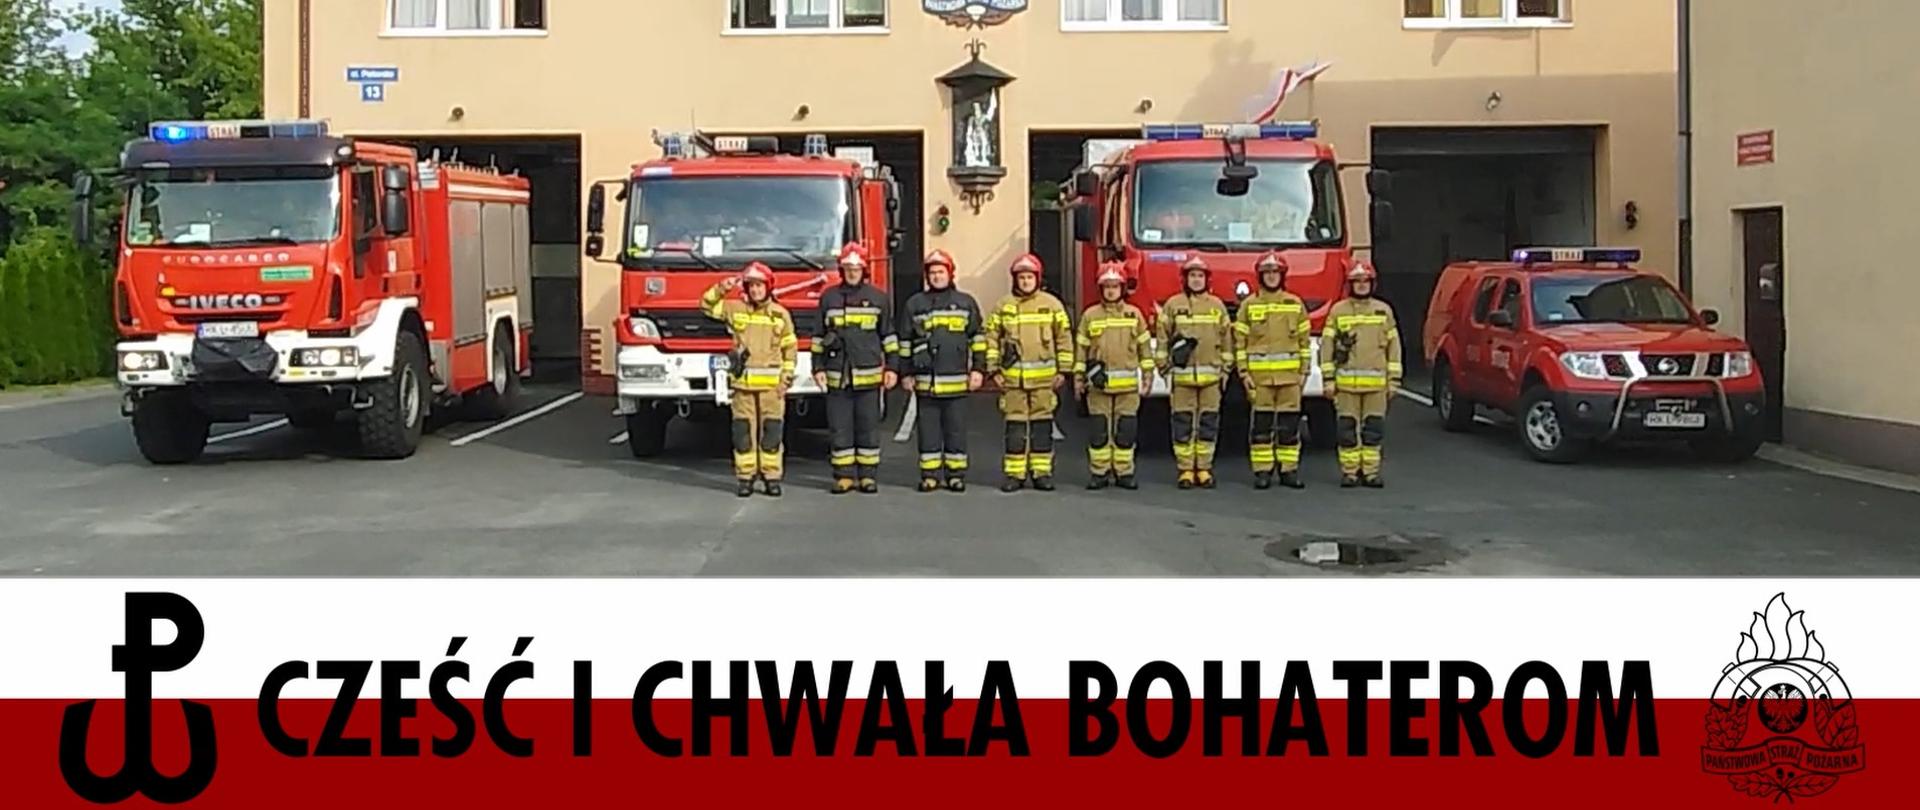 Na zdjęciu ośmiu strażakach w ubraniach specjalnych stoi w szeregu. Za nimi ustawione samochody pożarnicze.Na dole zdjęcia biało czerwona wstęga z symbolem Polski Walczącej , logo PSP oraz napisem Cześć i chwała bohaterom